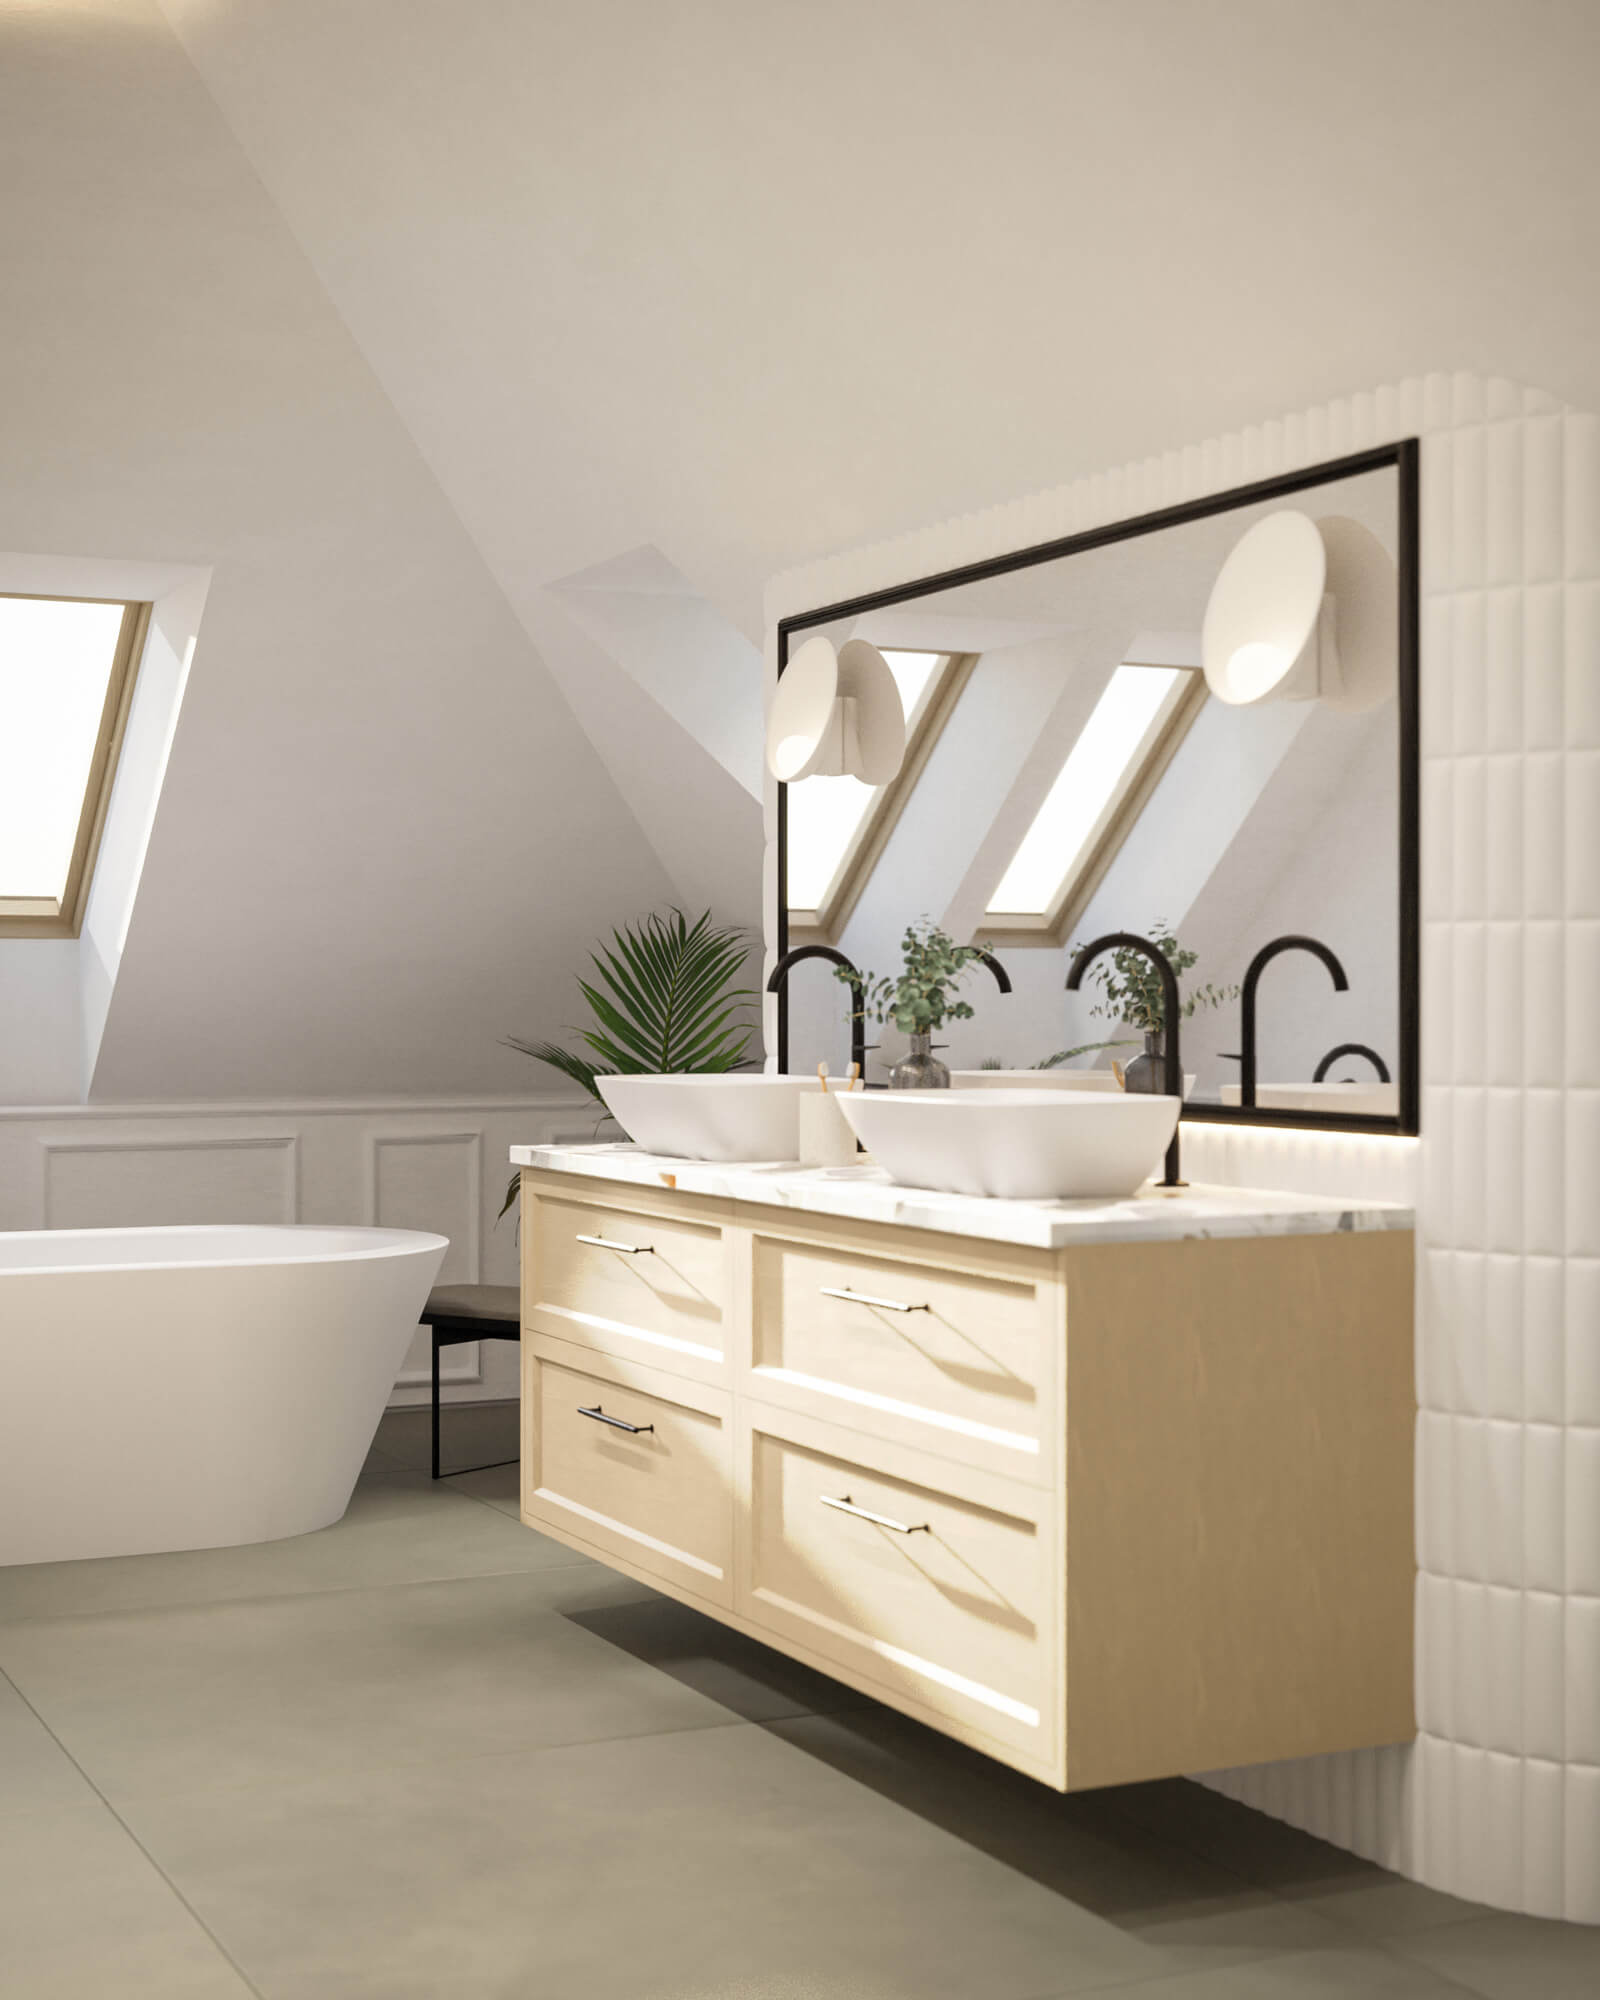 Tetőtéri 3D fürdőszoba látványterv nagy négyzetes tükörrel és káddal